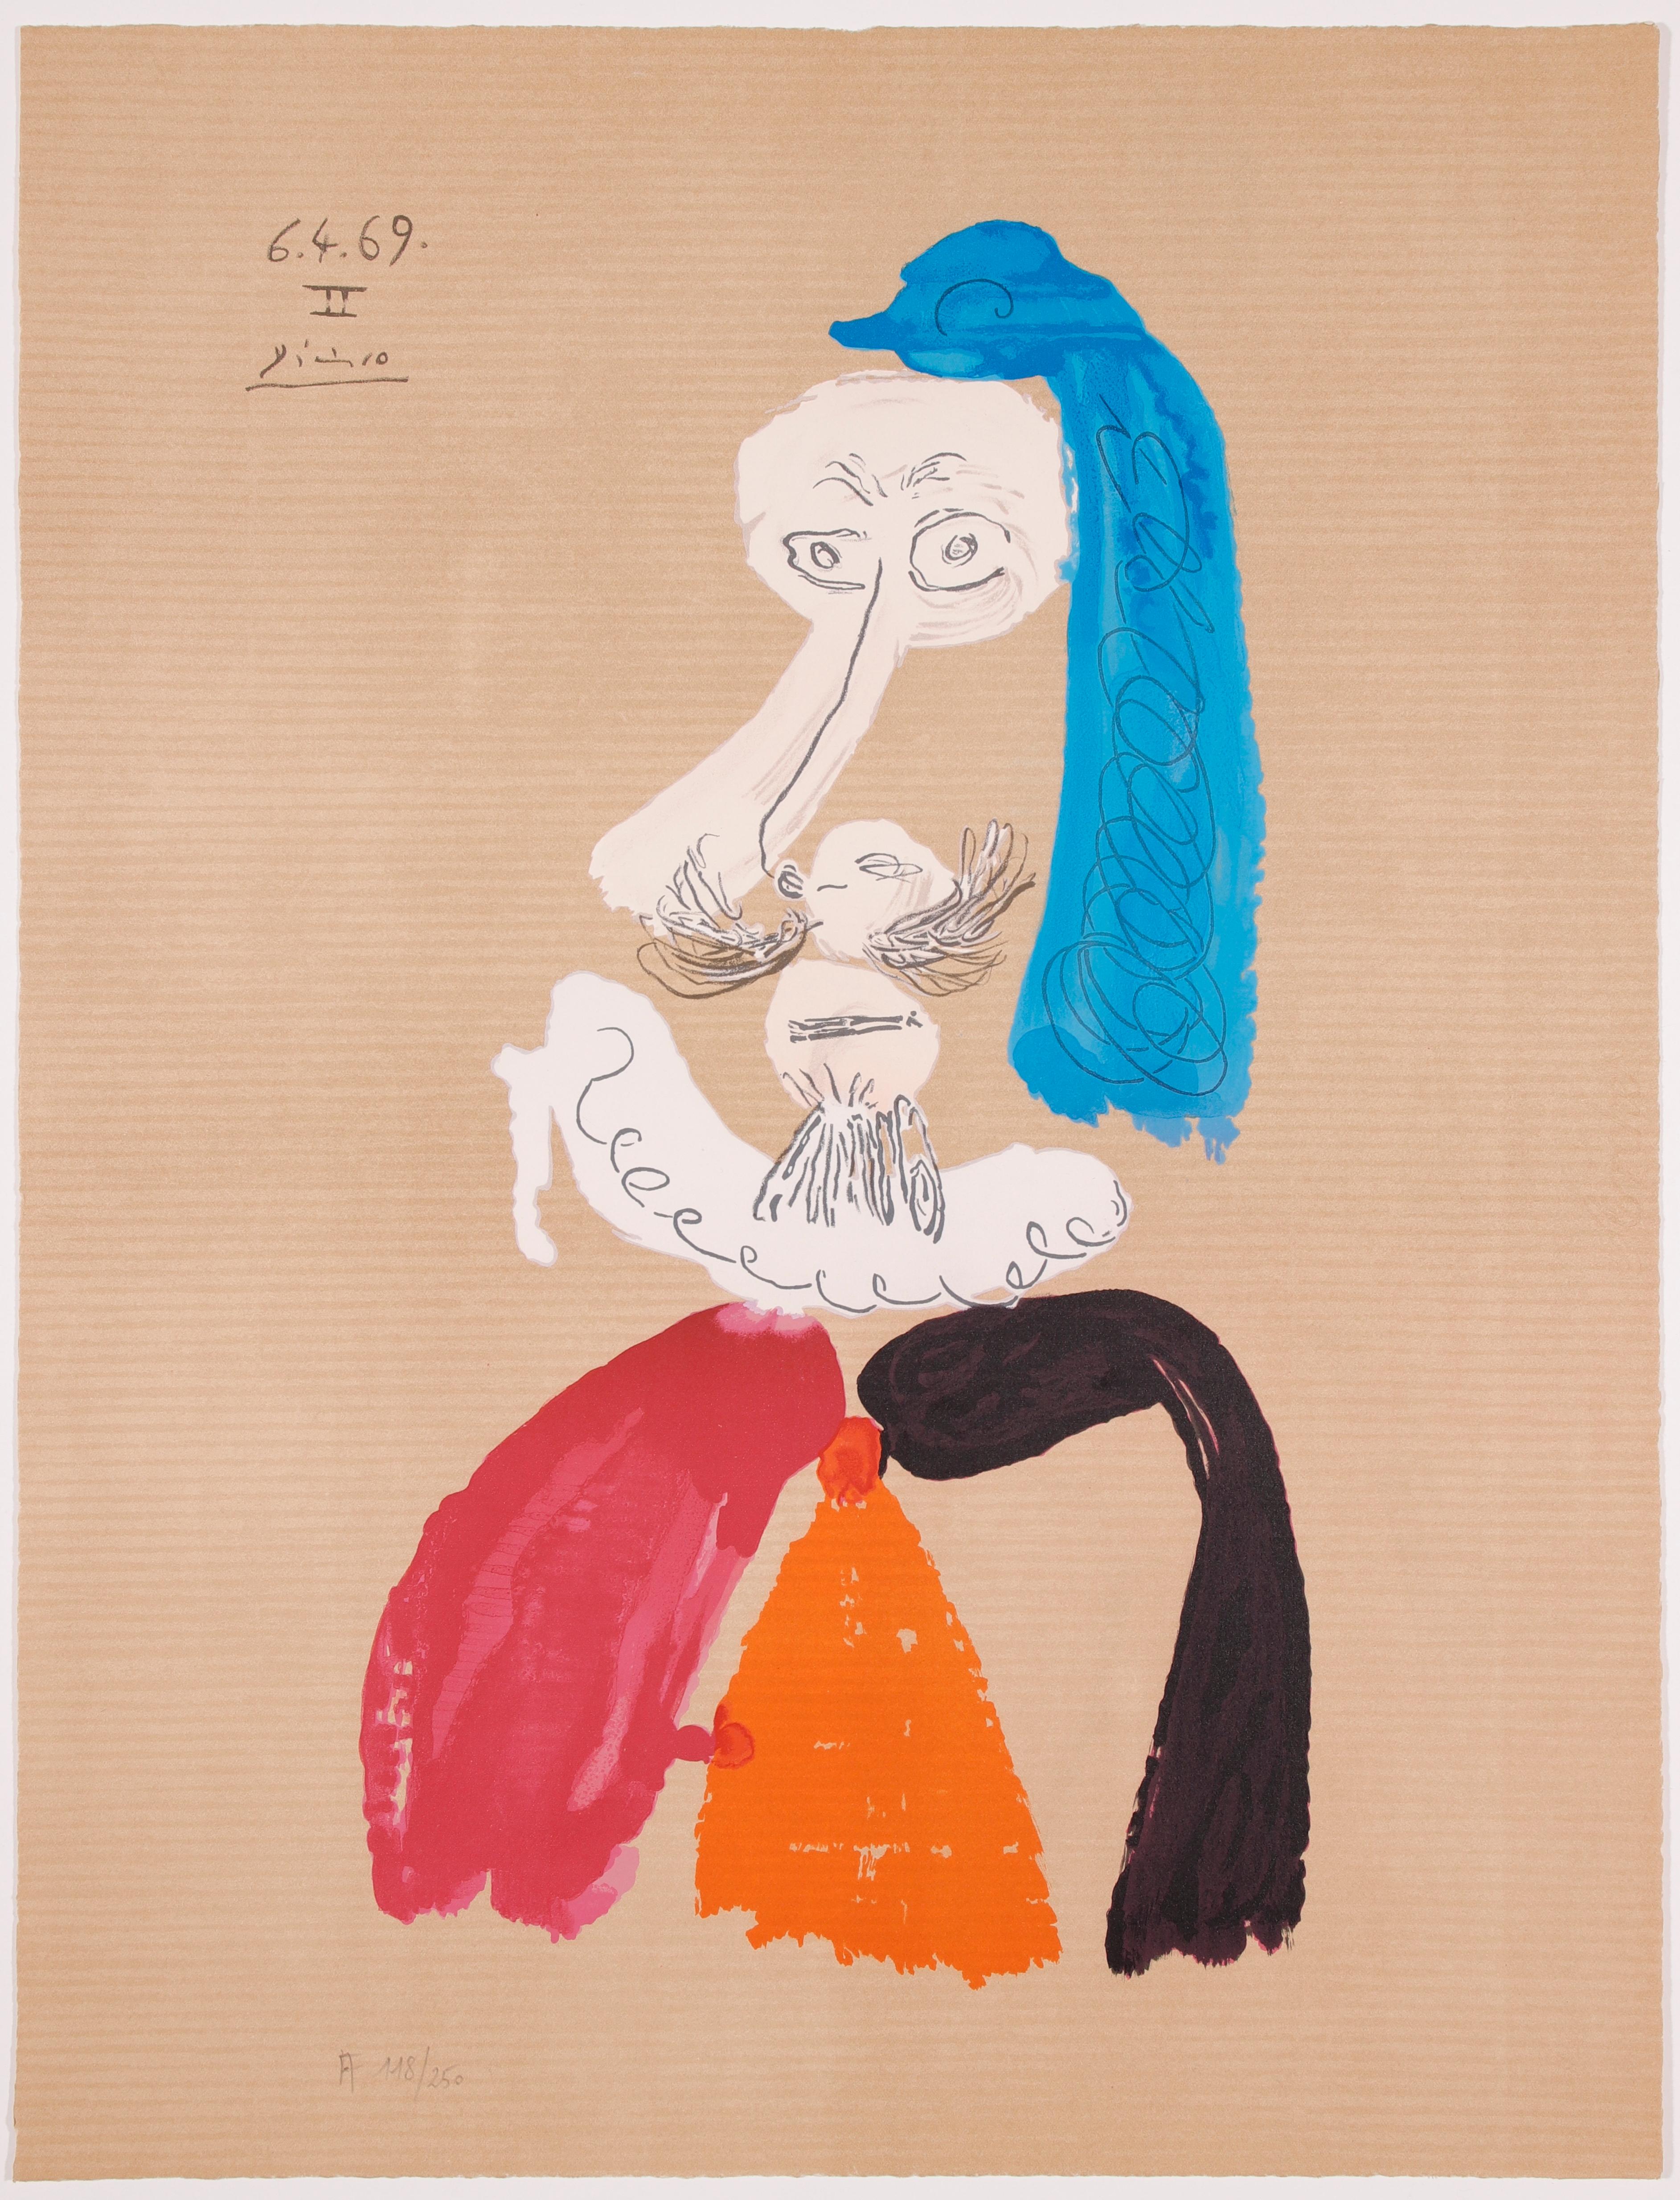 Pablo Picasso Portrait Print - Portrait Imaginaires 6.4.69 II